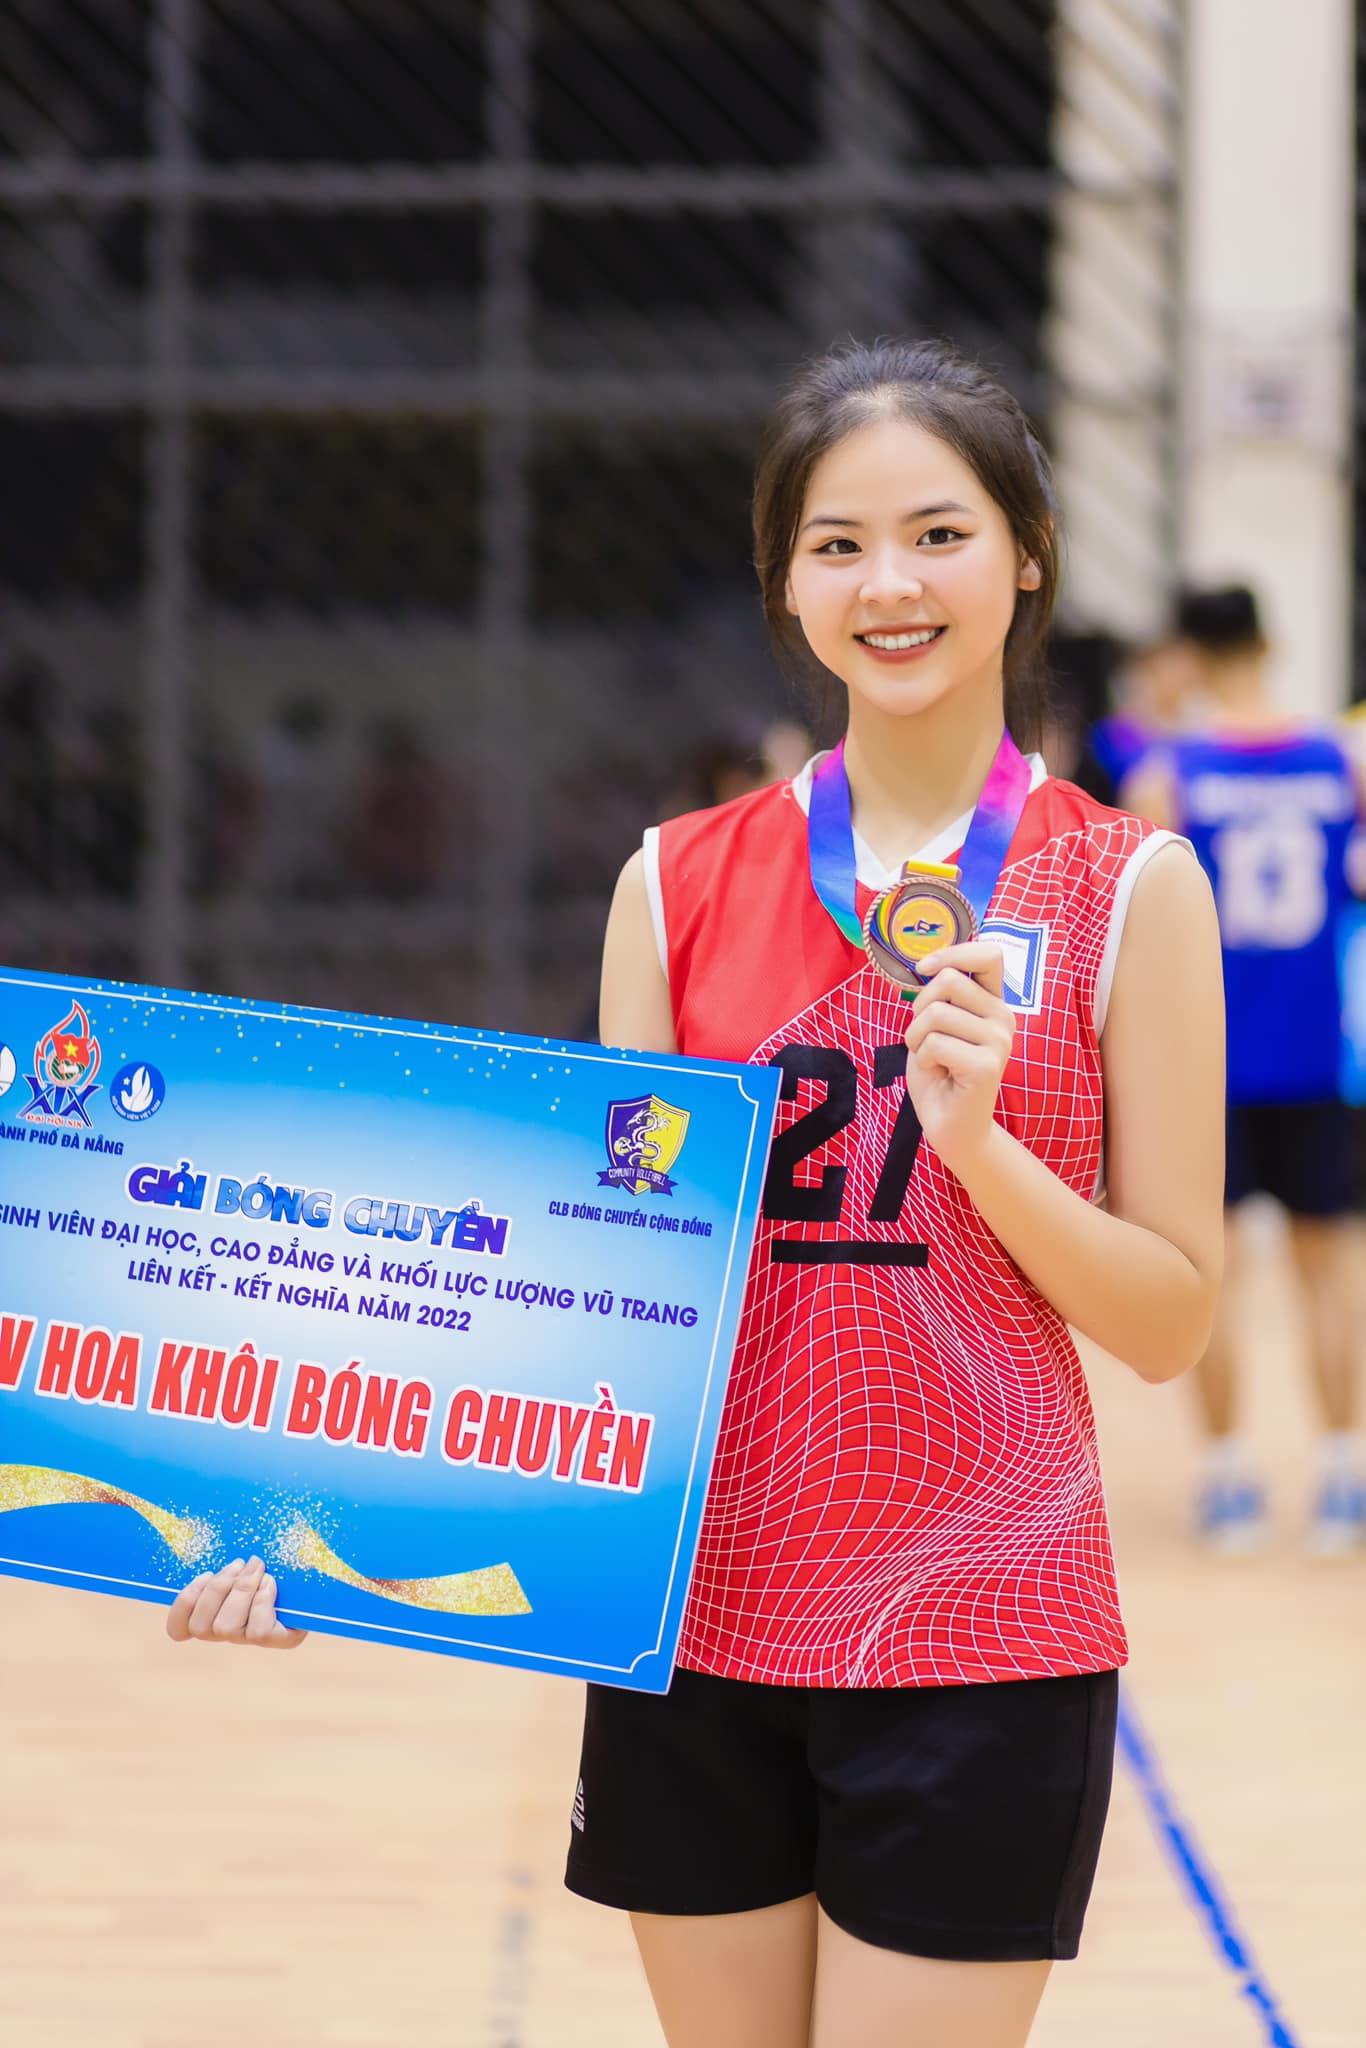 Cô từng giành giải&nbsp;Hoa khôi bóng chuyền Thành phố Đà Nẵng 2023 và Hoa khôi bóng chuyền của&nbsp;Giải Bóng chuyền khối sinh viên Đại học, Cao Đẳng và Khối Lực lượng vũ trang Liên kết năm 2022.